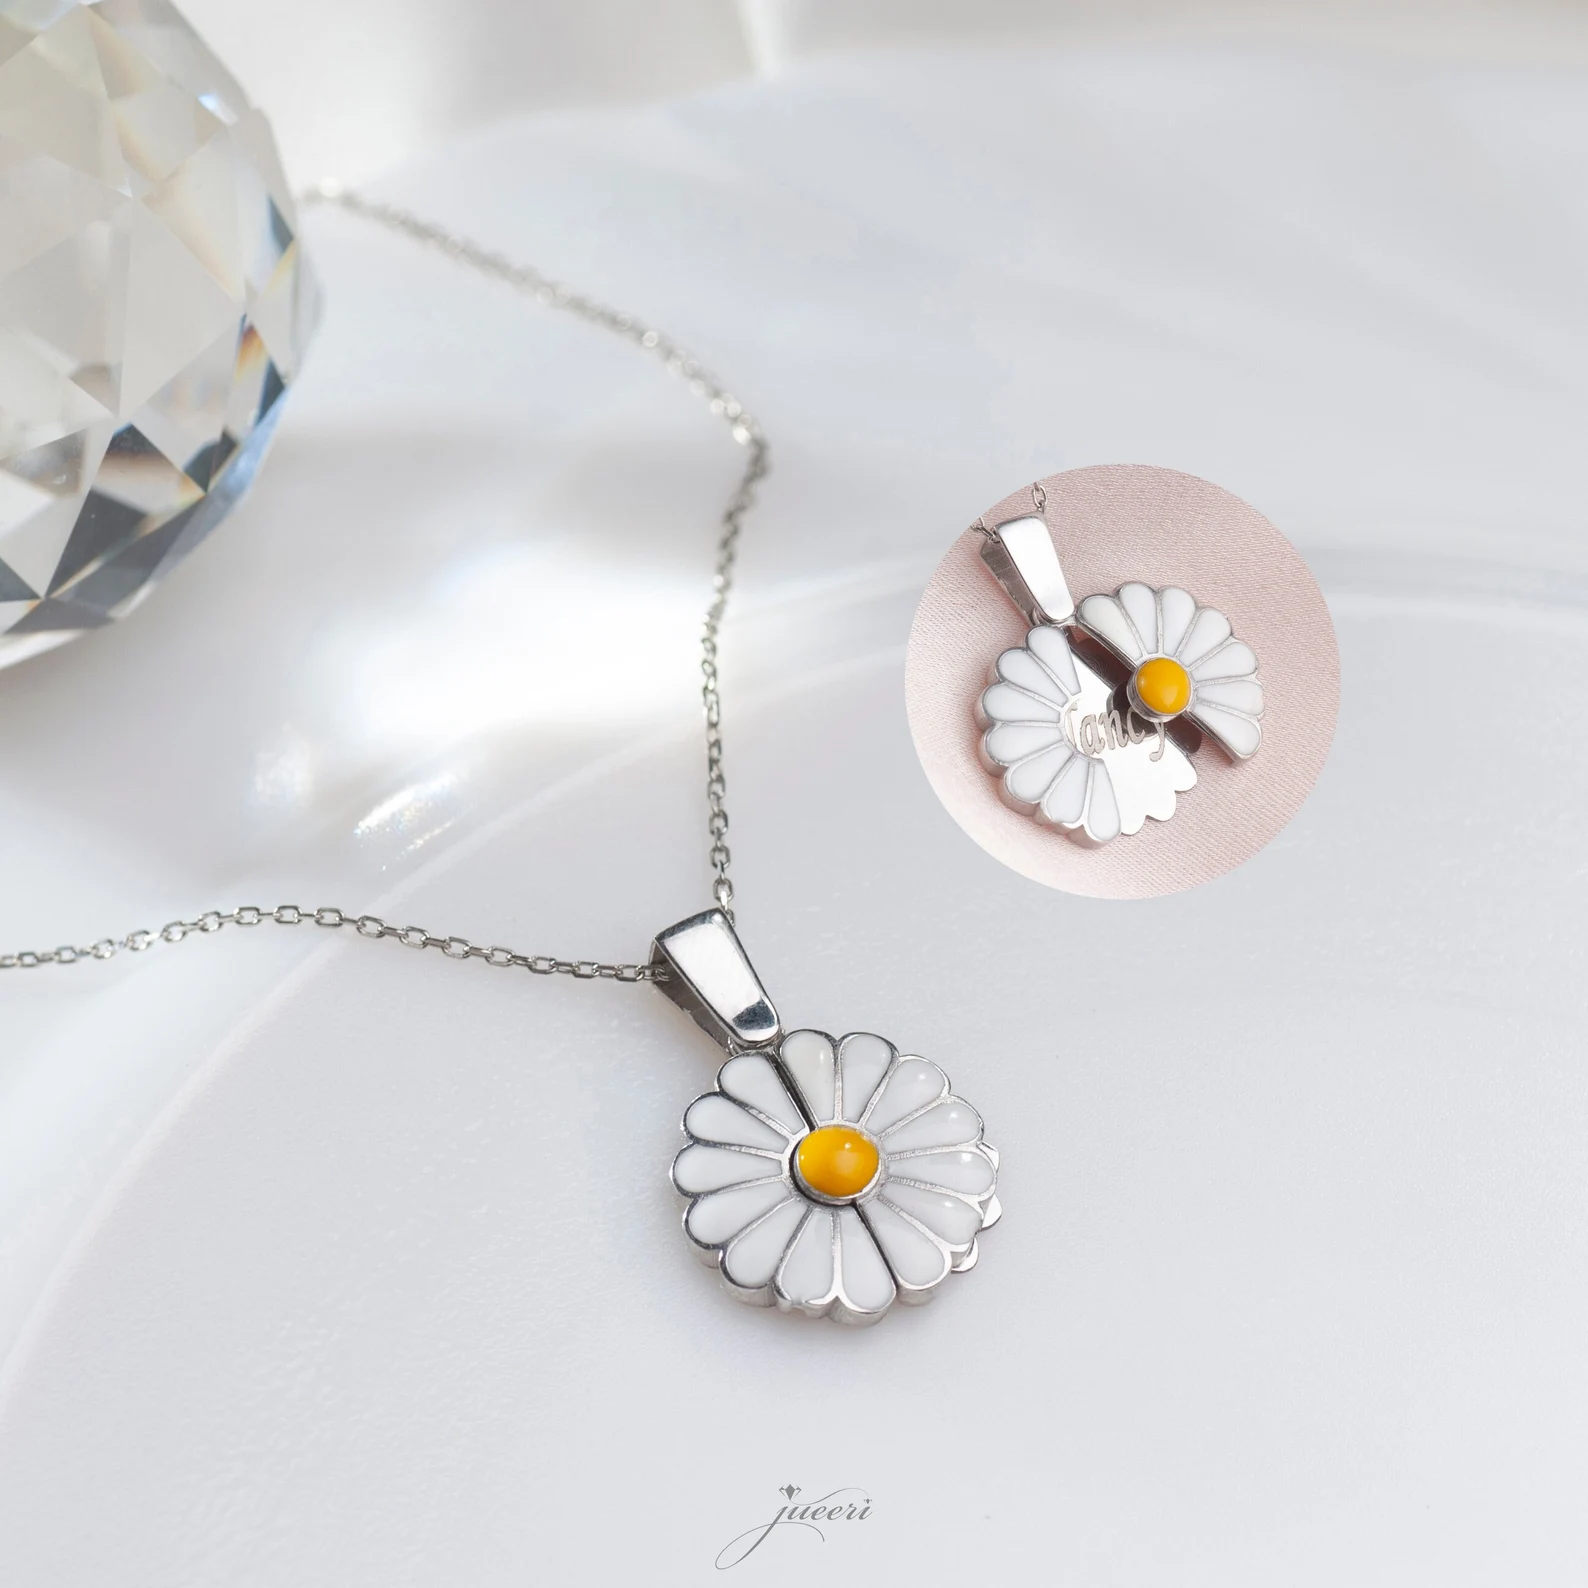 hidden message birth flower necklace etsy